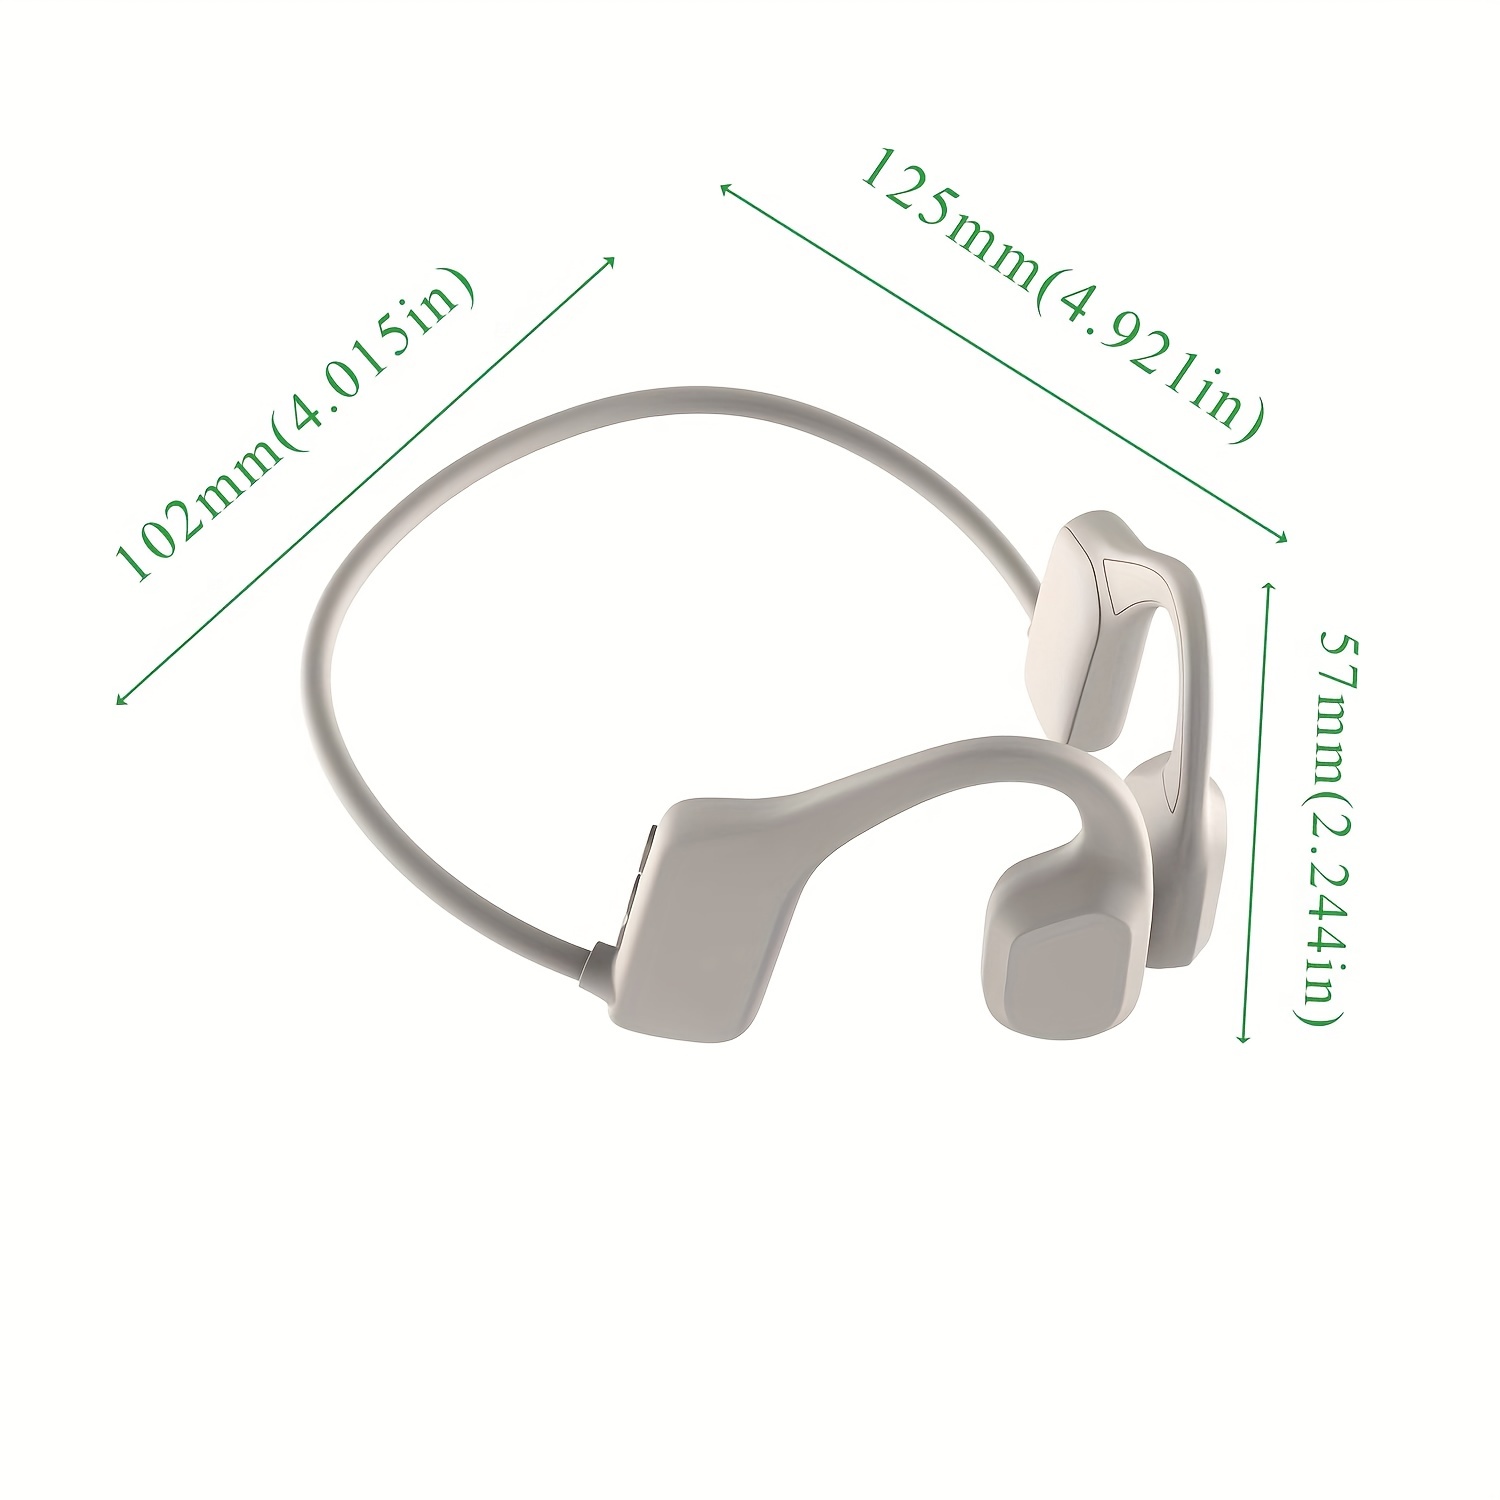 Les Nouvelles de l'Innovation  Nouveauté antichoc : un kit oreillette  Bluetooth MTT résistant anti-chocs & projections d'eau - Les Nouvelles de  l'Innovation